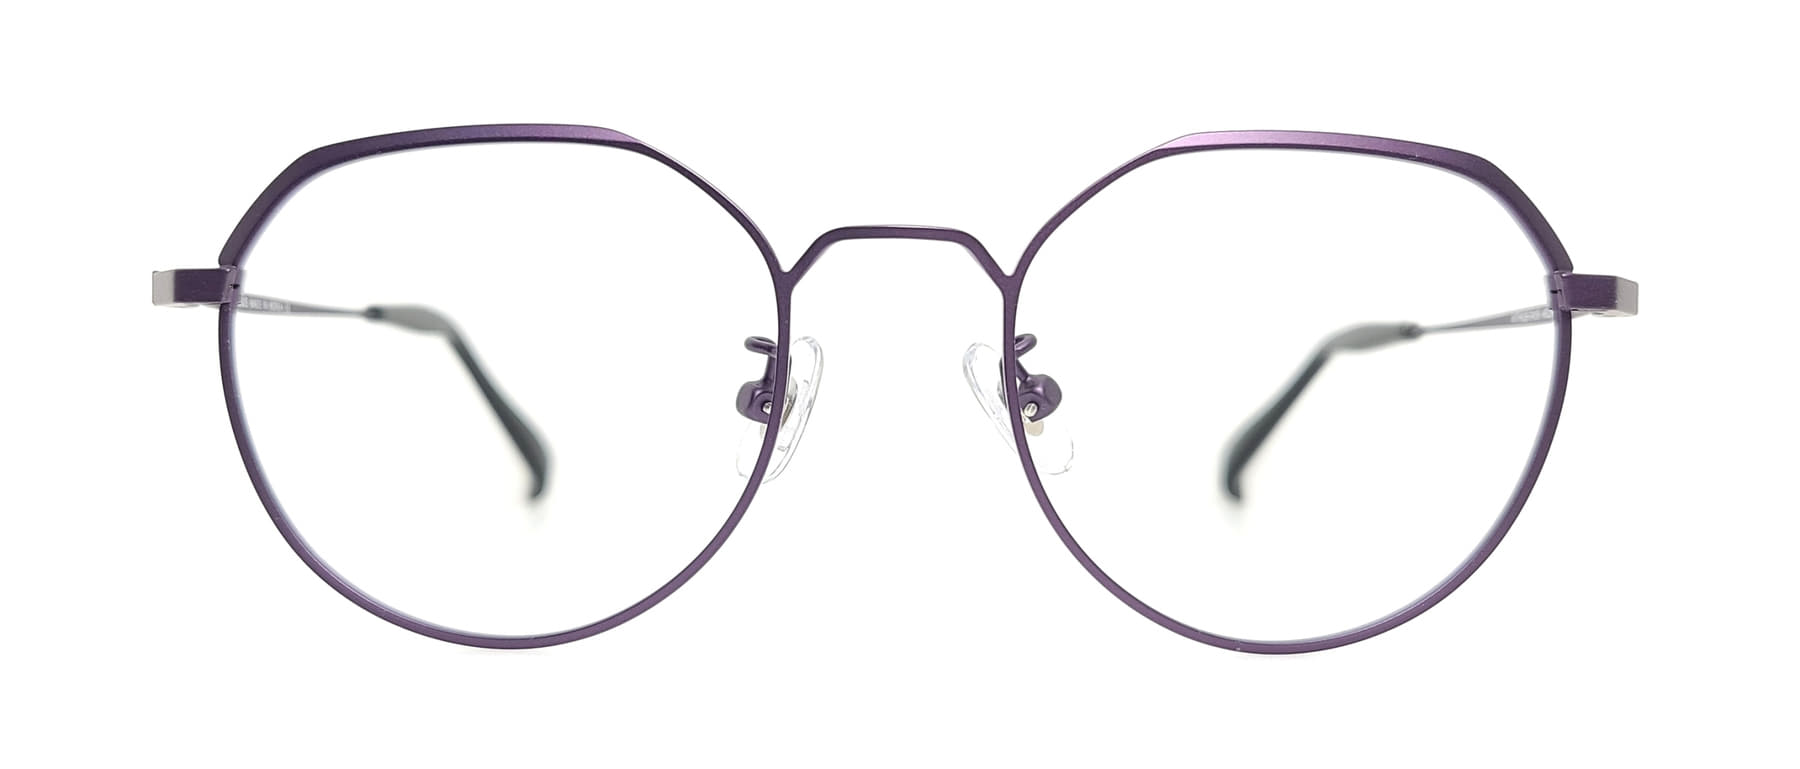 WITHUS-7419, Korean glasses, sunglasses, eyeglasses, glasses